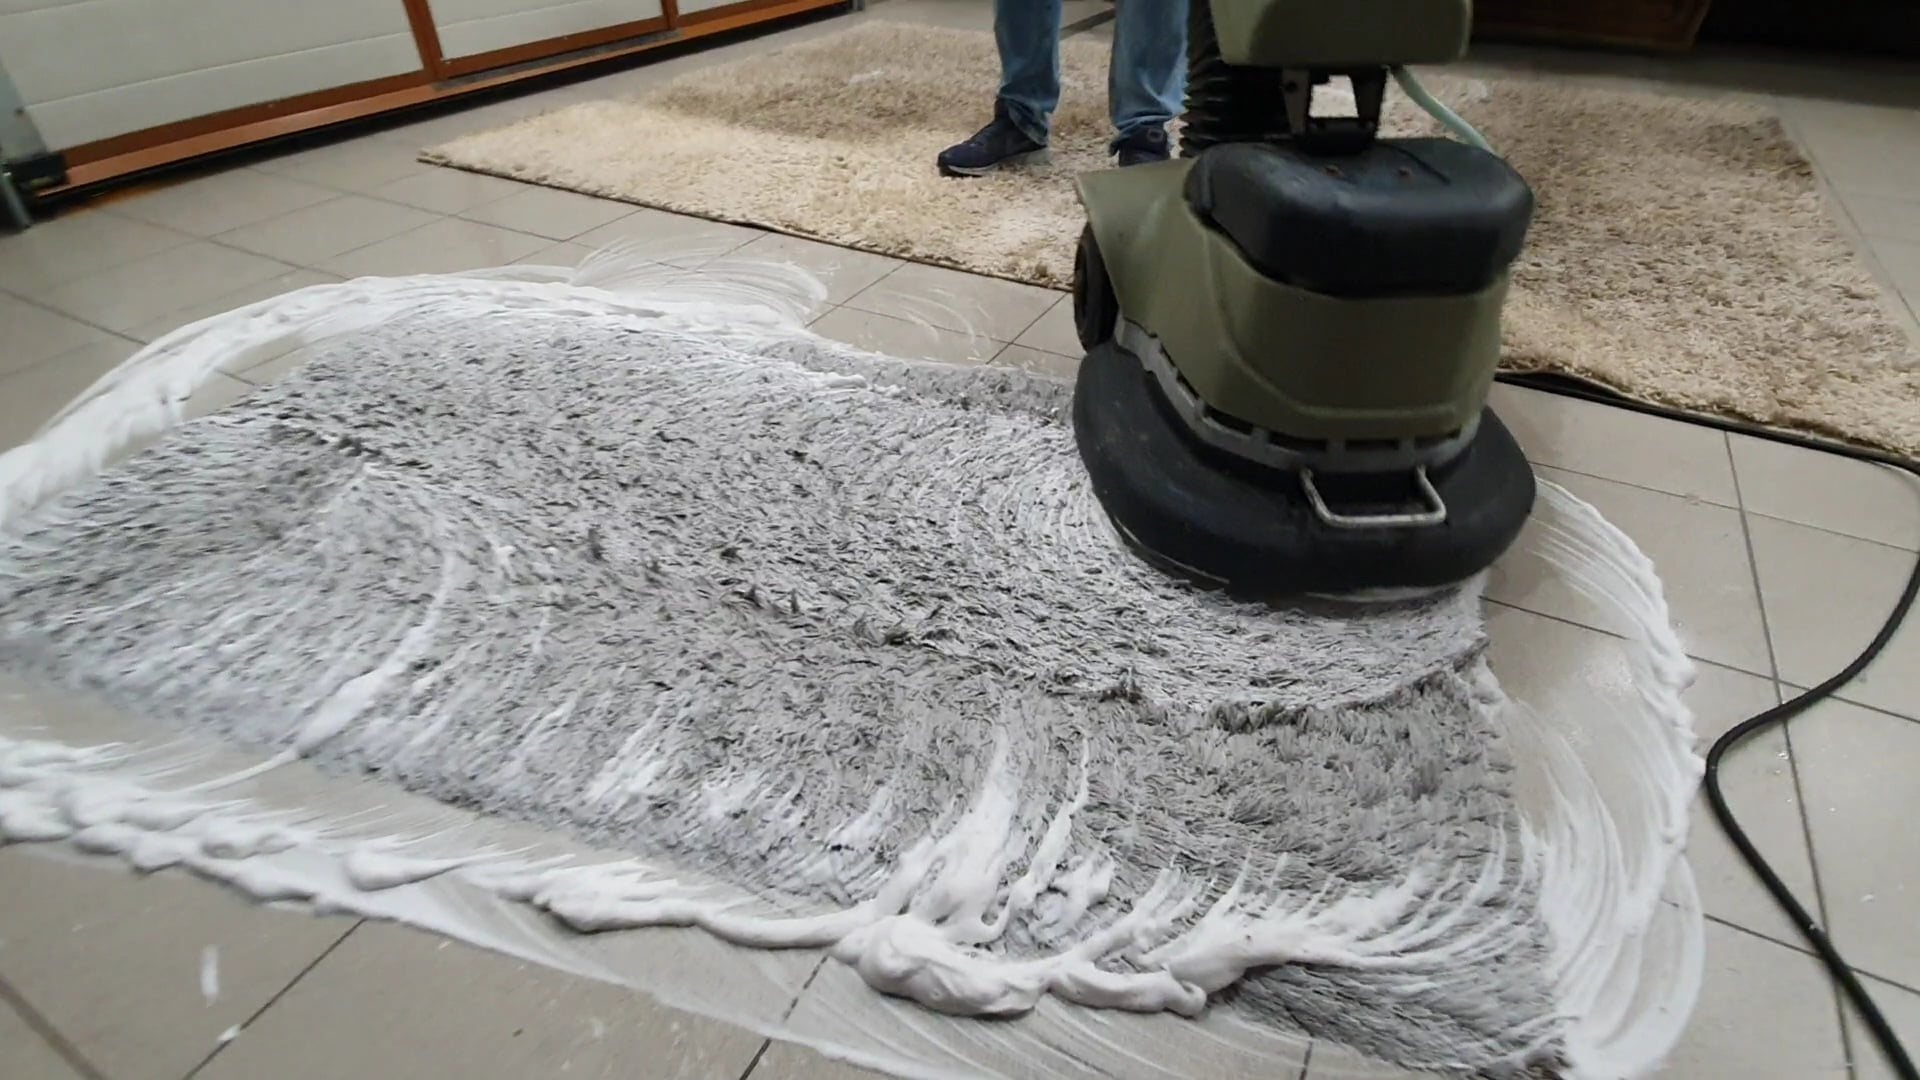 Pranie dywanu specjalistyczną maszyną przez pracownika firmy Solid Work. Widać białą pianę na czyszczonej powierzchni.